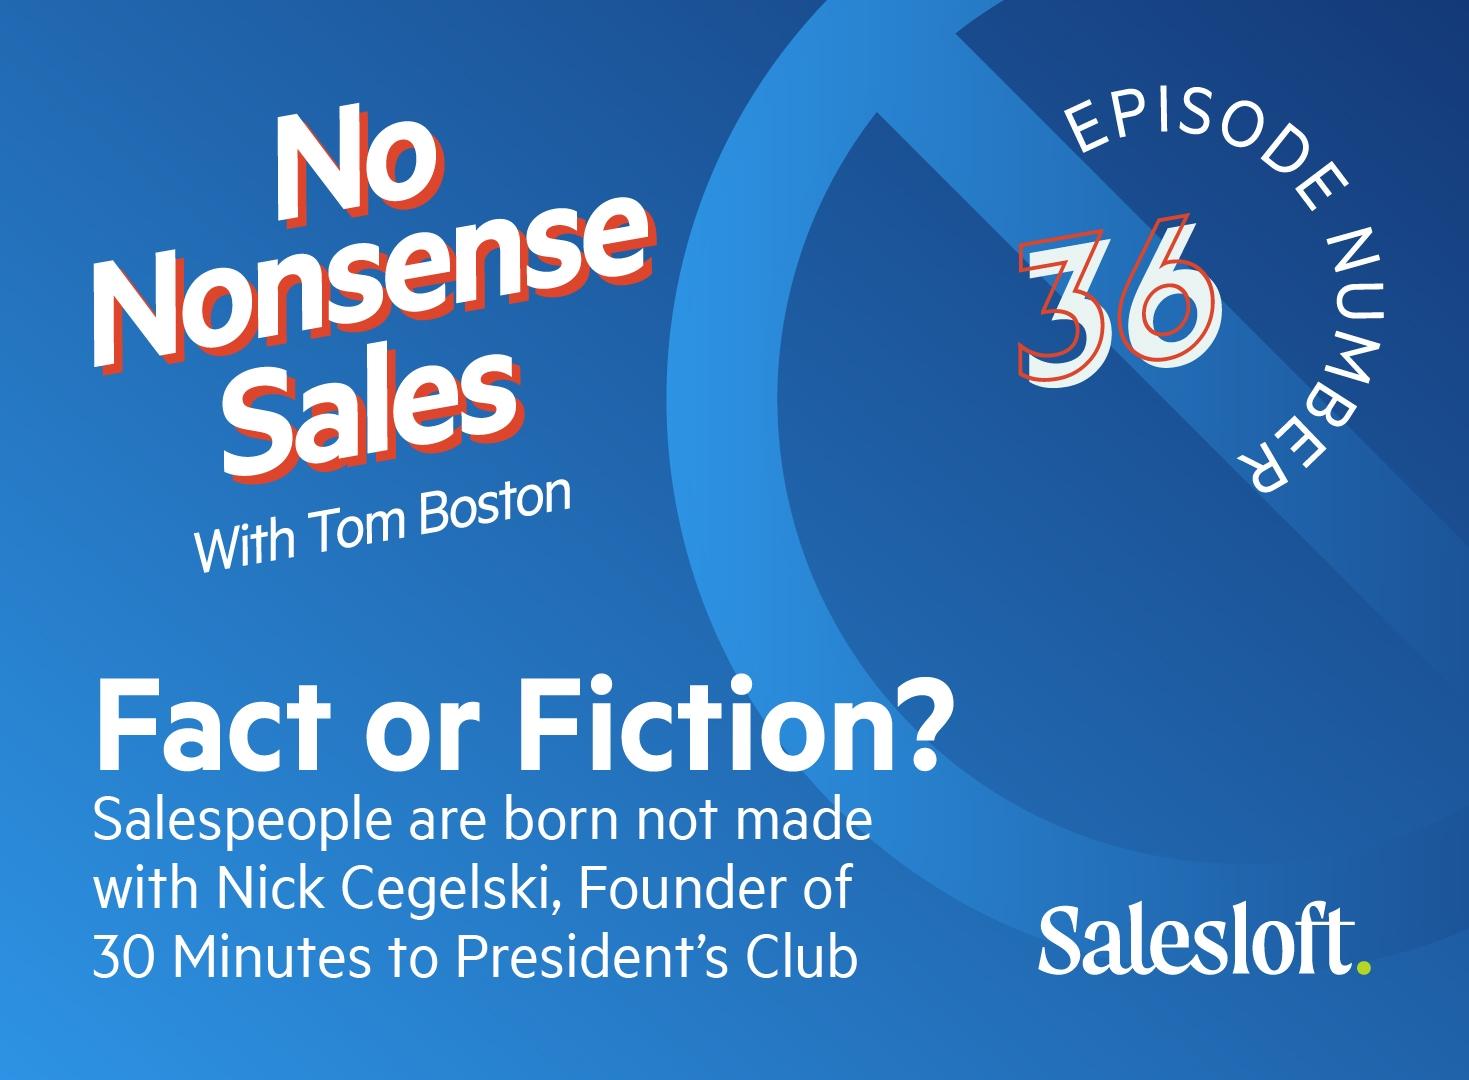 No Nonsense Sales Episode 36